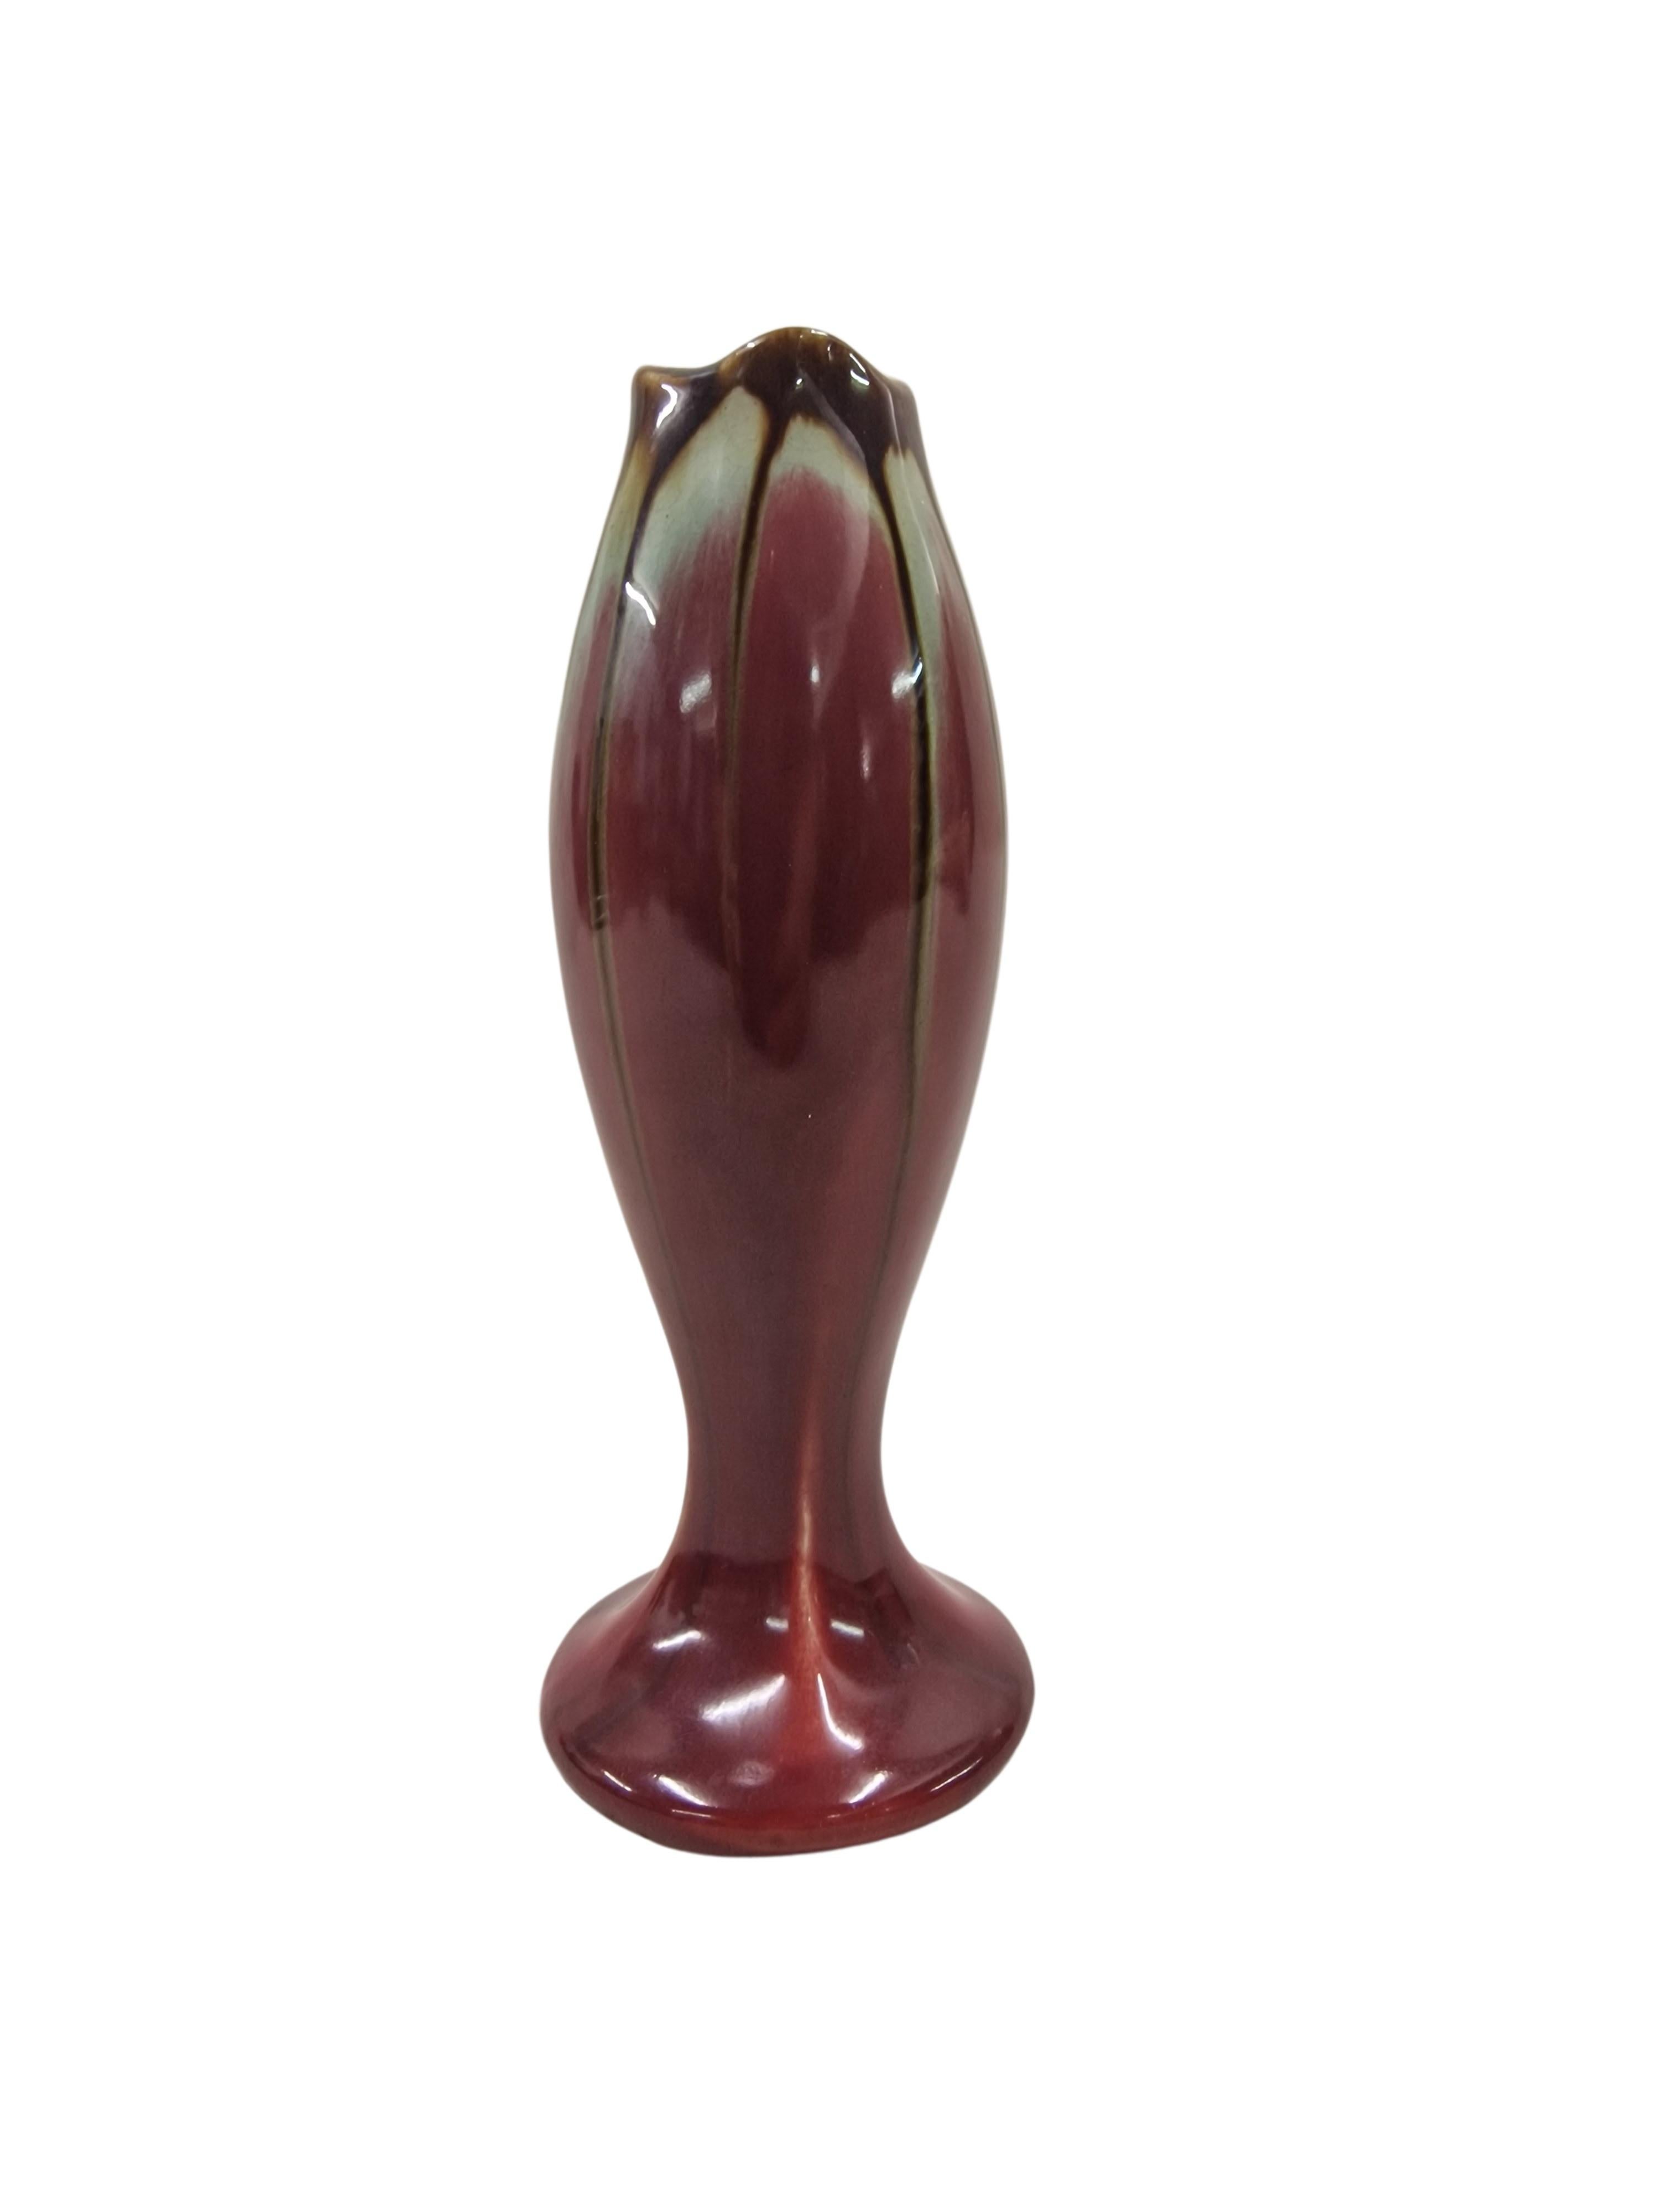 Wunderschöne Blumenvase des berühmten Herstellers Thulin aus Belgien, hergestellt in den 1930er Jahren. 

Die Vase ist in Form wie in Farbigkeit aufwendig gestaltet. Der runde Sockel geht in eine erhabene, bauchige Form über, die im oberen Auslauf